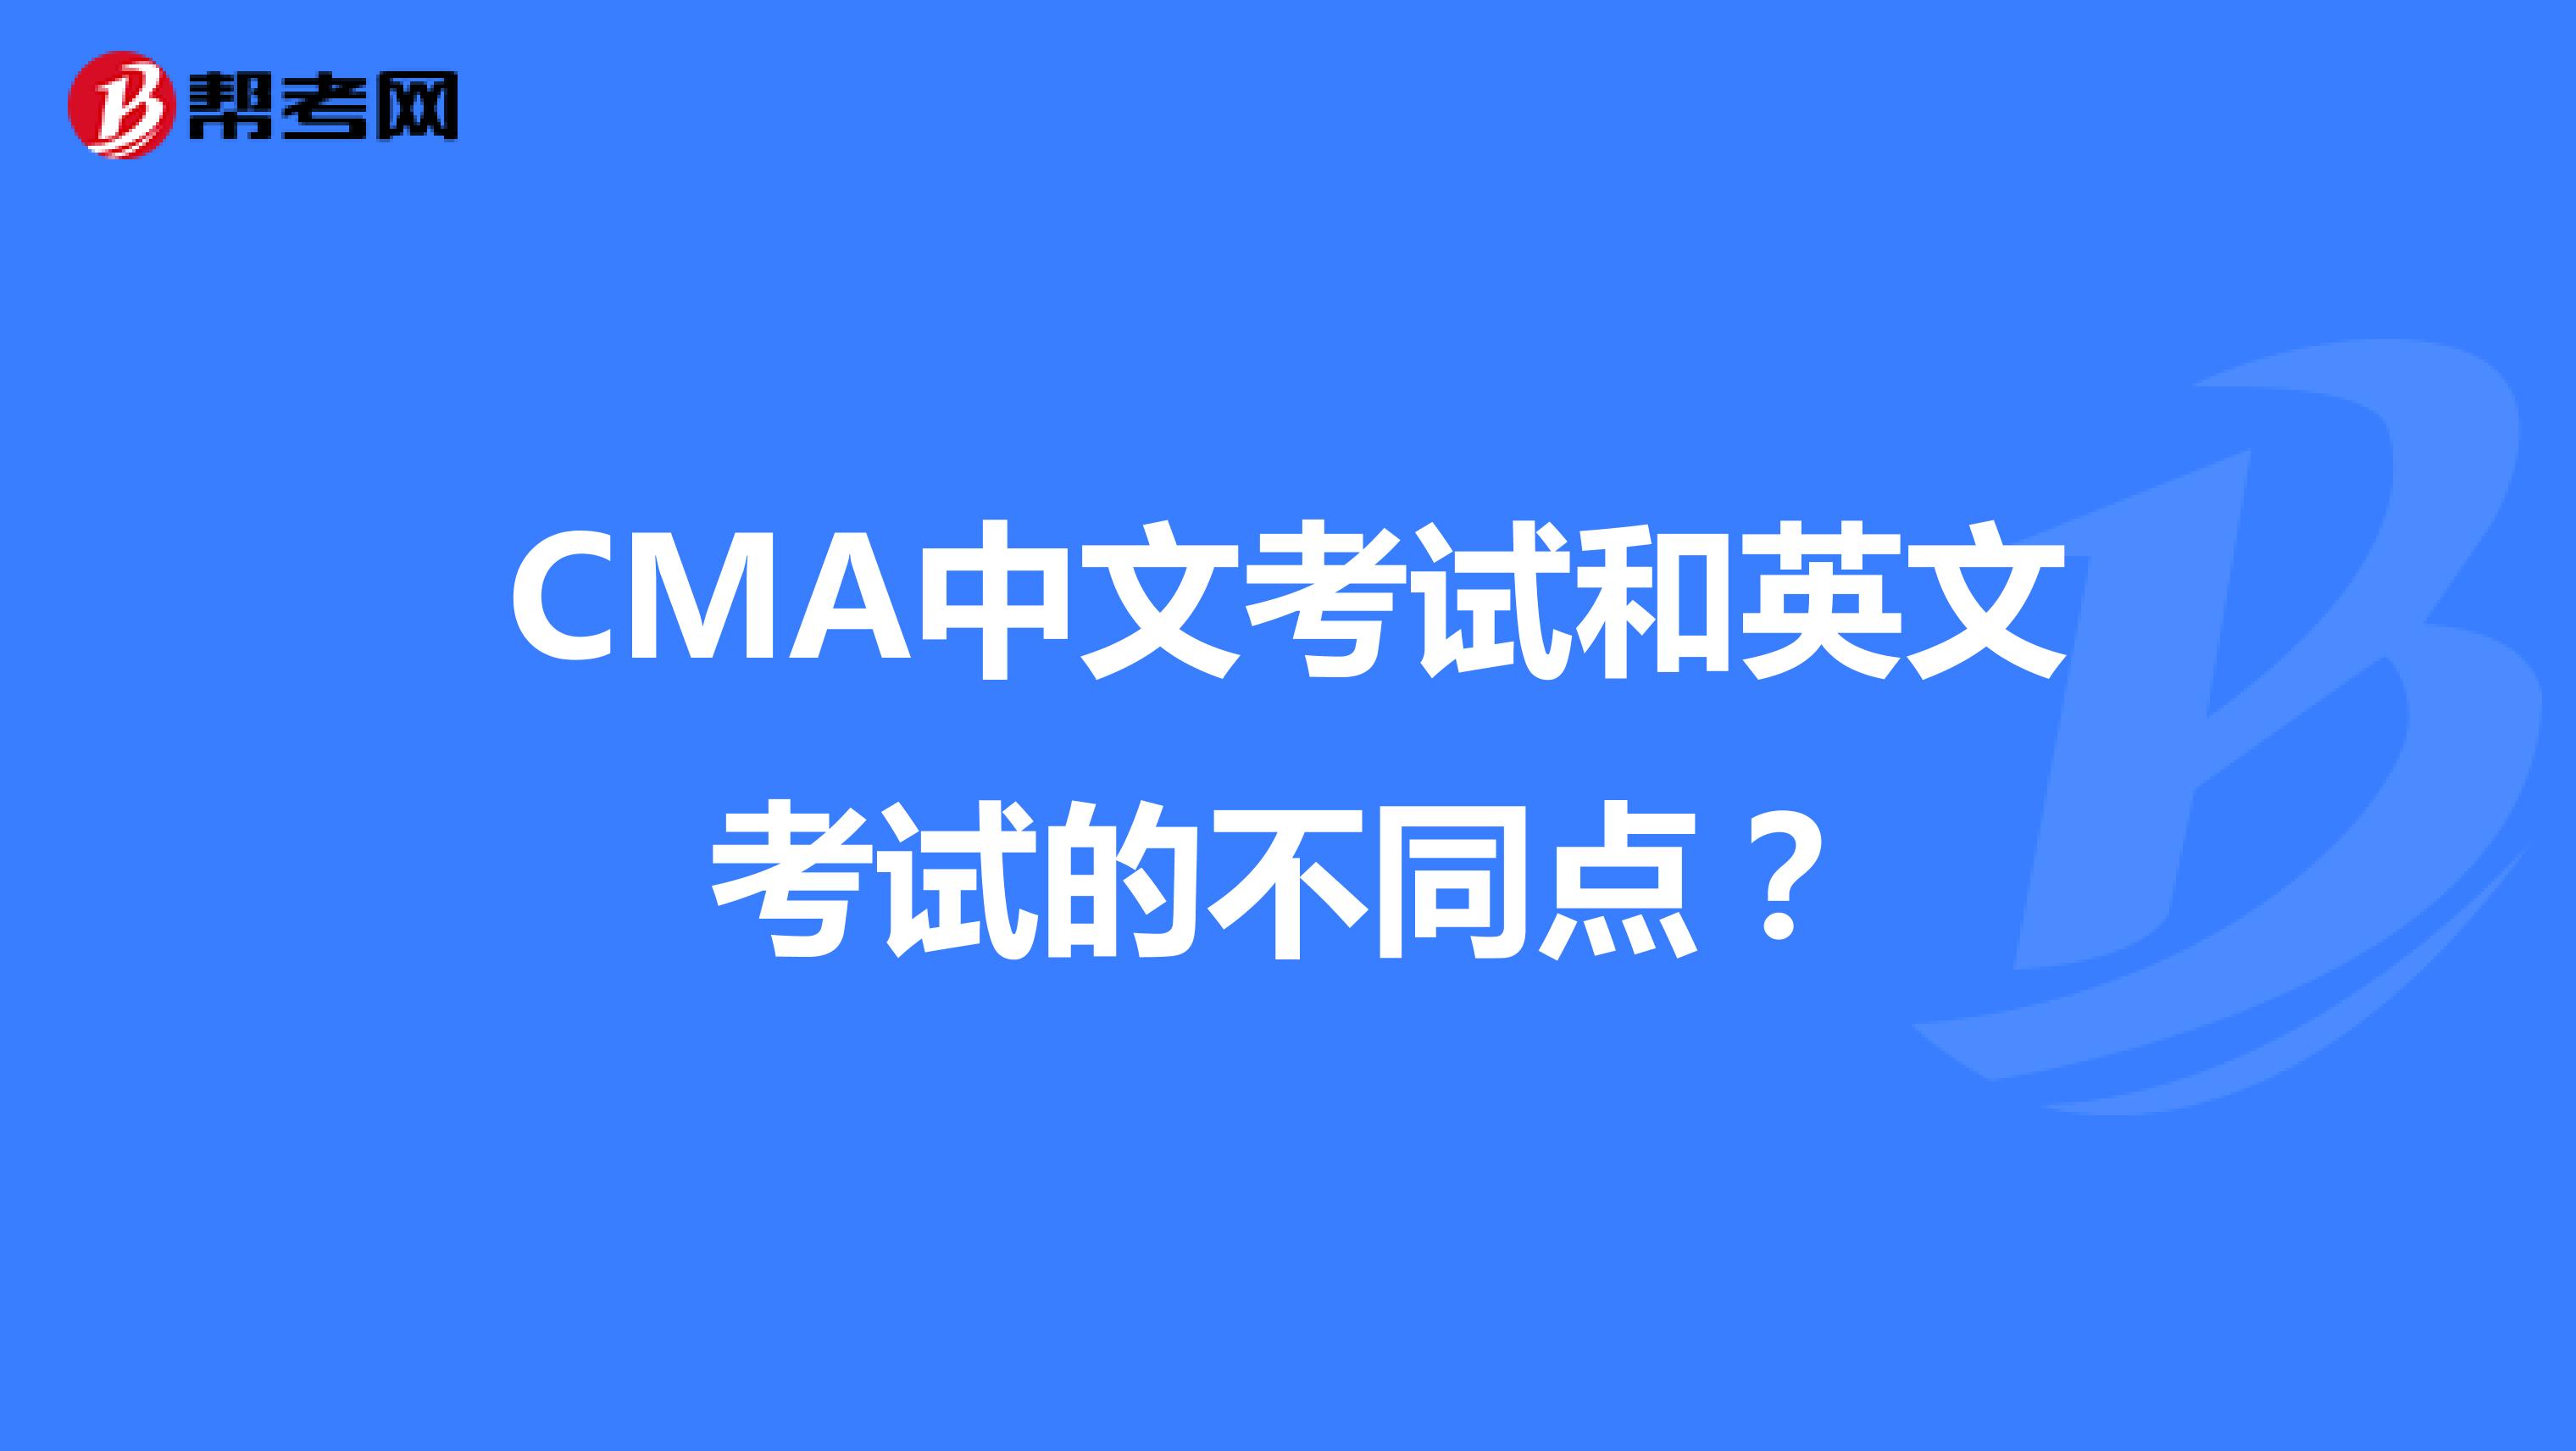 CMA中文考试和英文考试的不同点？